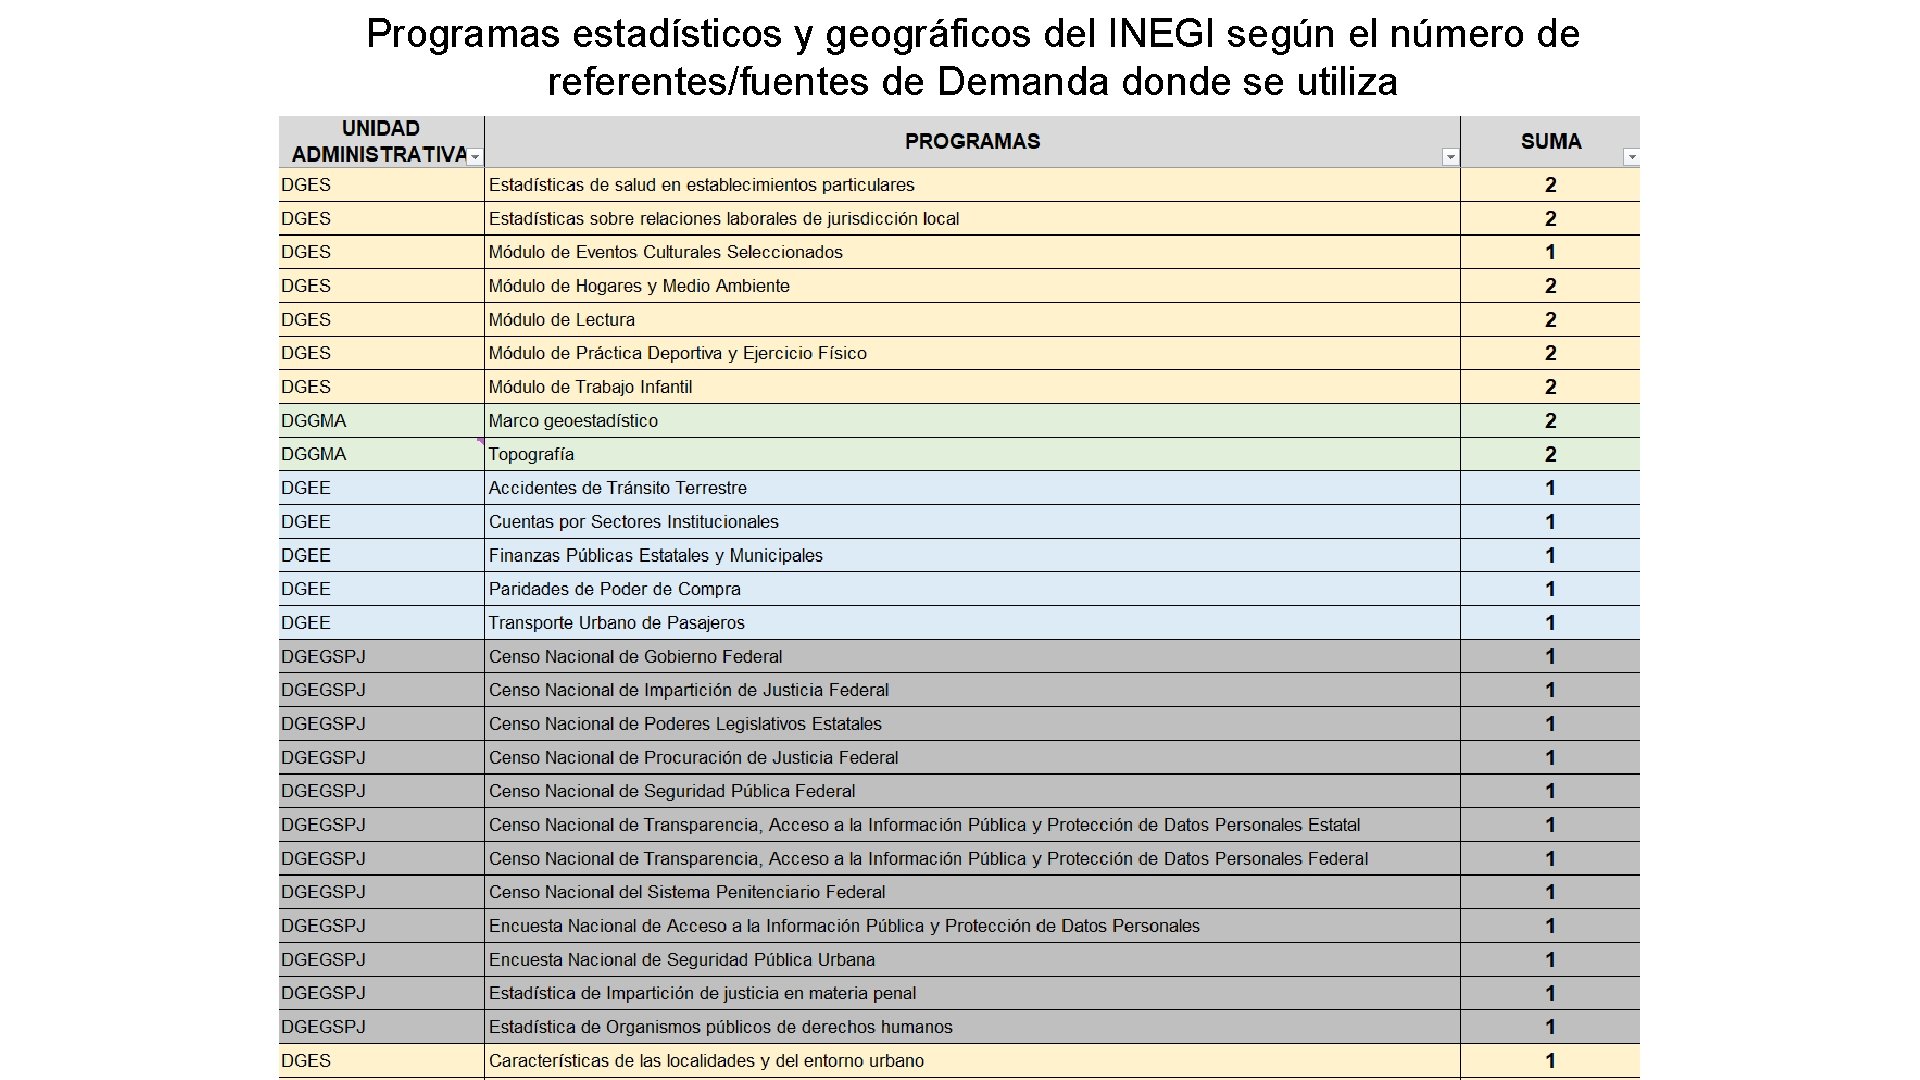 Programas estadísticos y geográficos del INEGI según el número de referentes/fuentes de Demanda donde